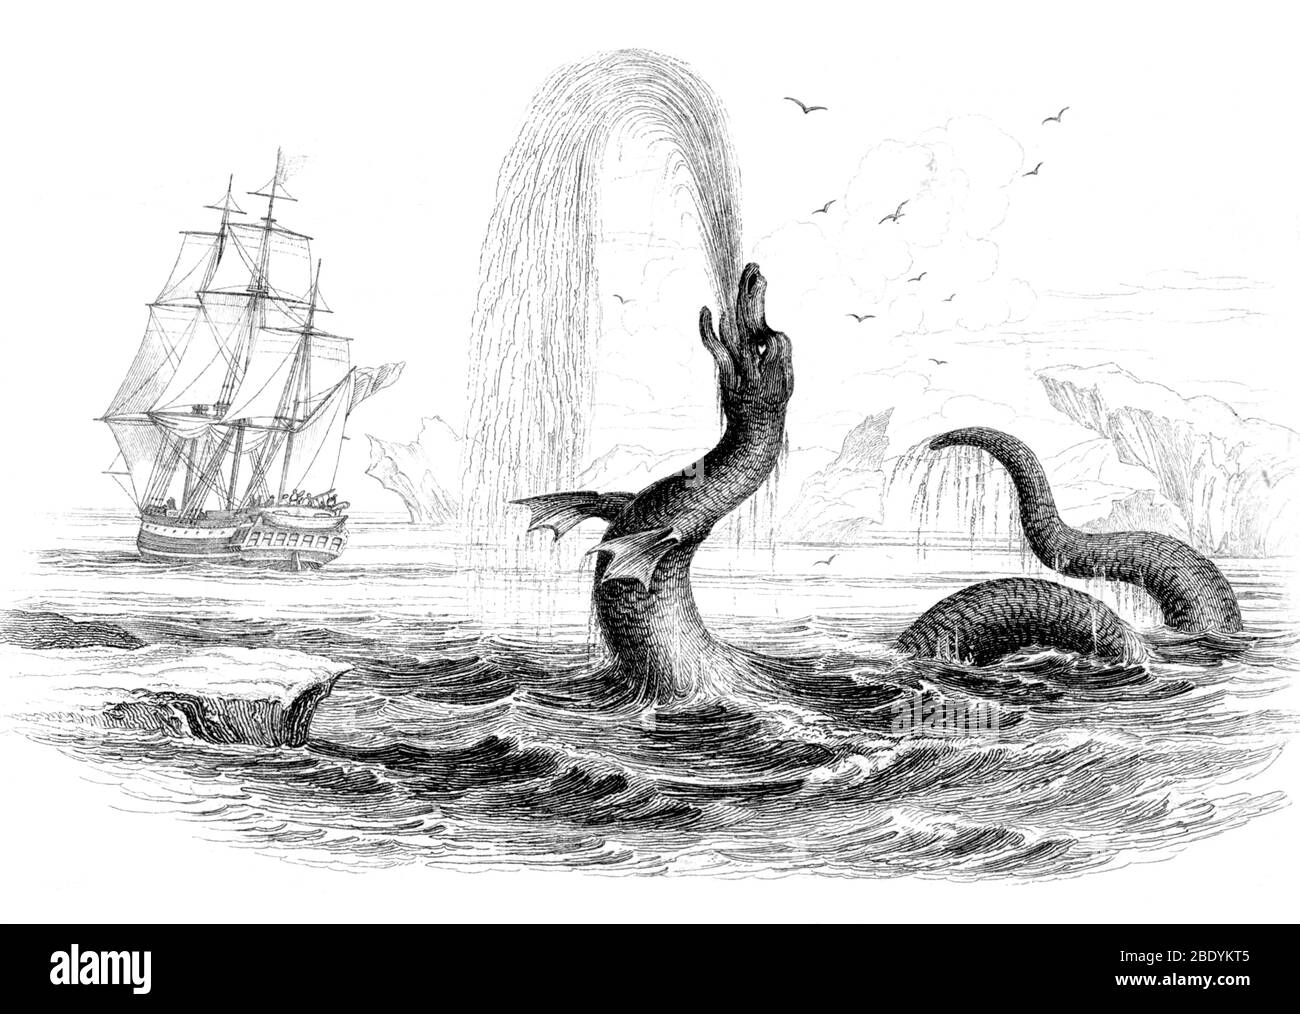 Serpiente de mar, monstruo legendario Foto de stock